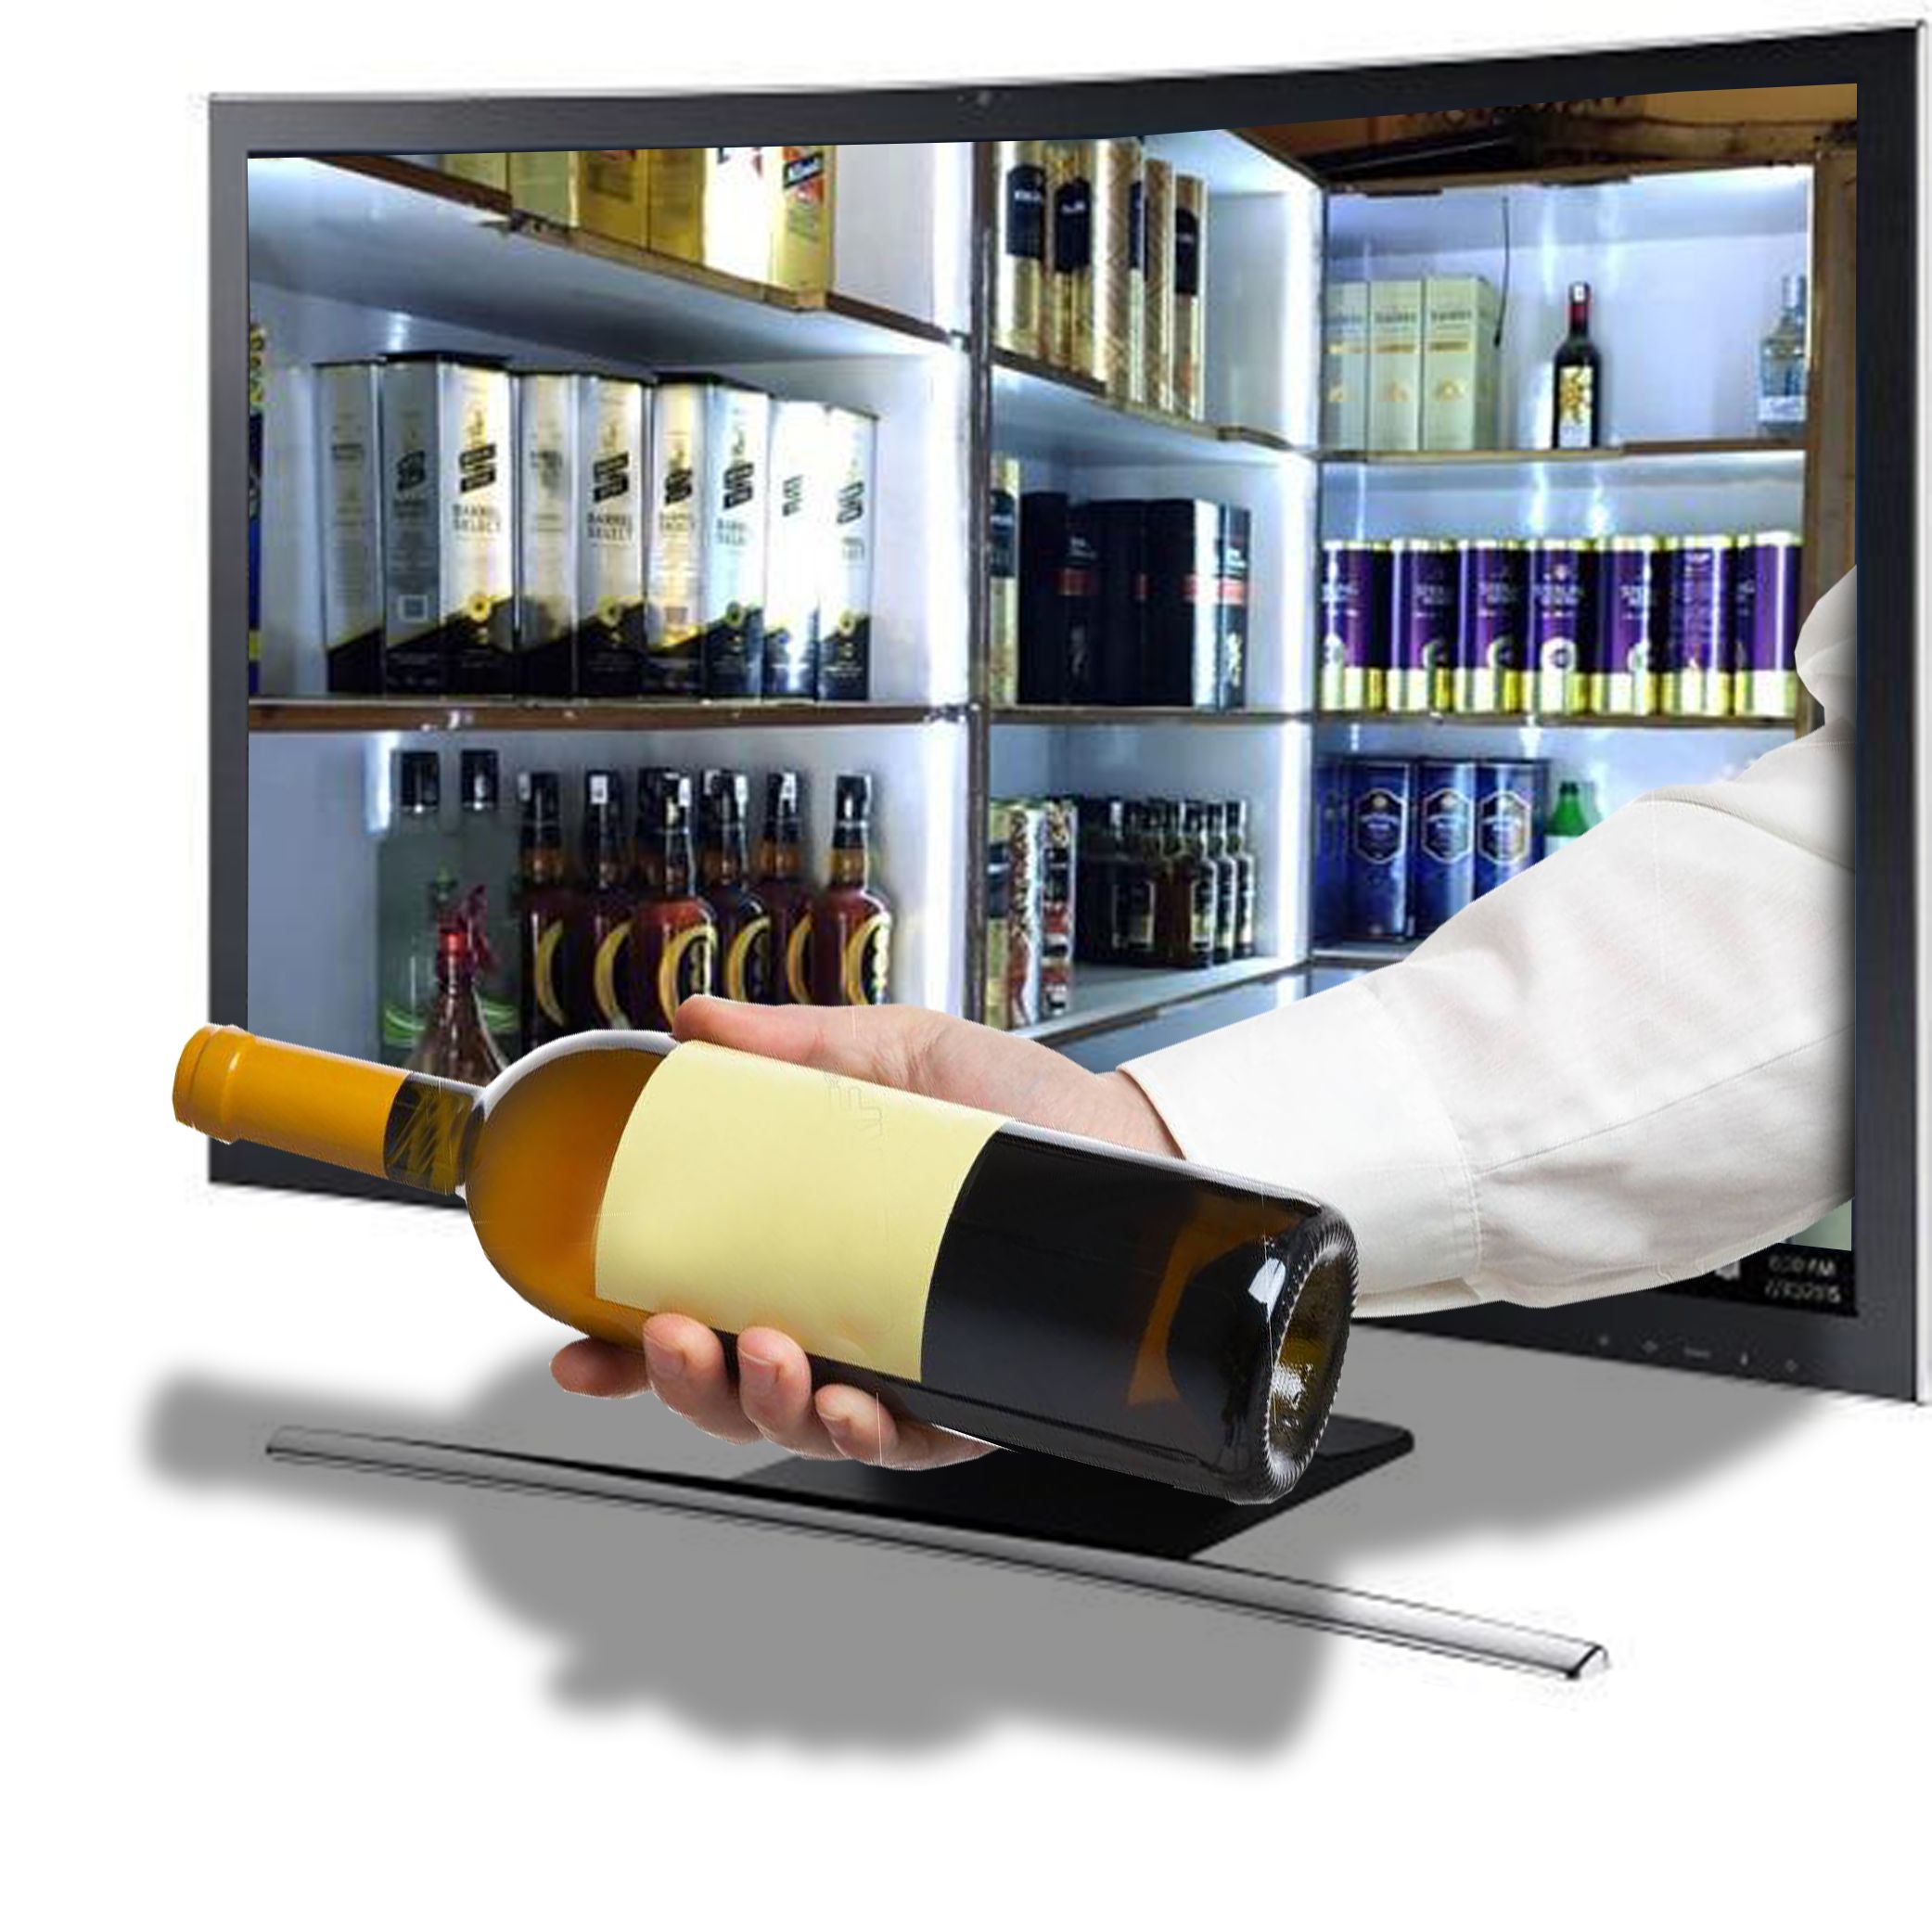 नई शराब नीति का हो रहा उल्लंघन, बड़े बोर्ड से कर रहे शराब का विज्ञापन